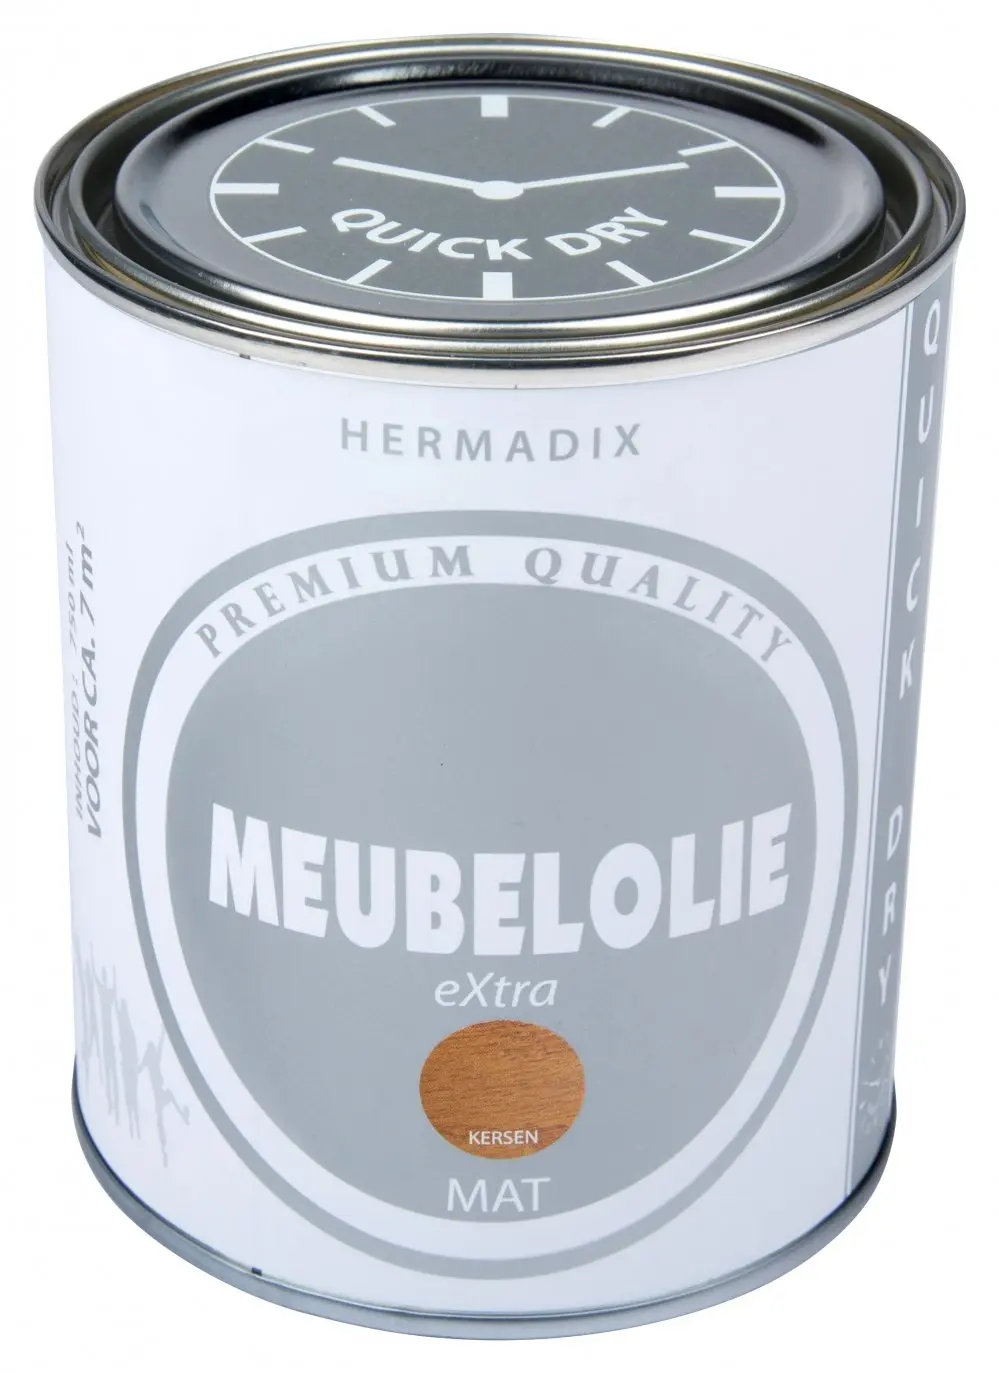 hermadix-meubellolie-extra-mat-kersen1-verfcompleet.nl